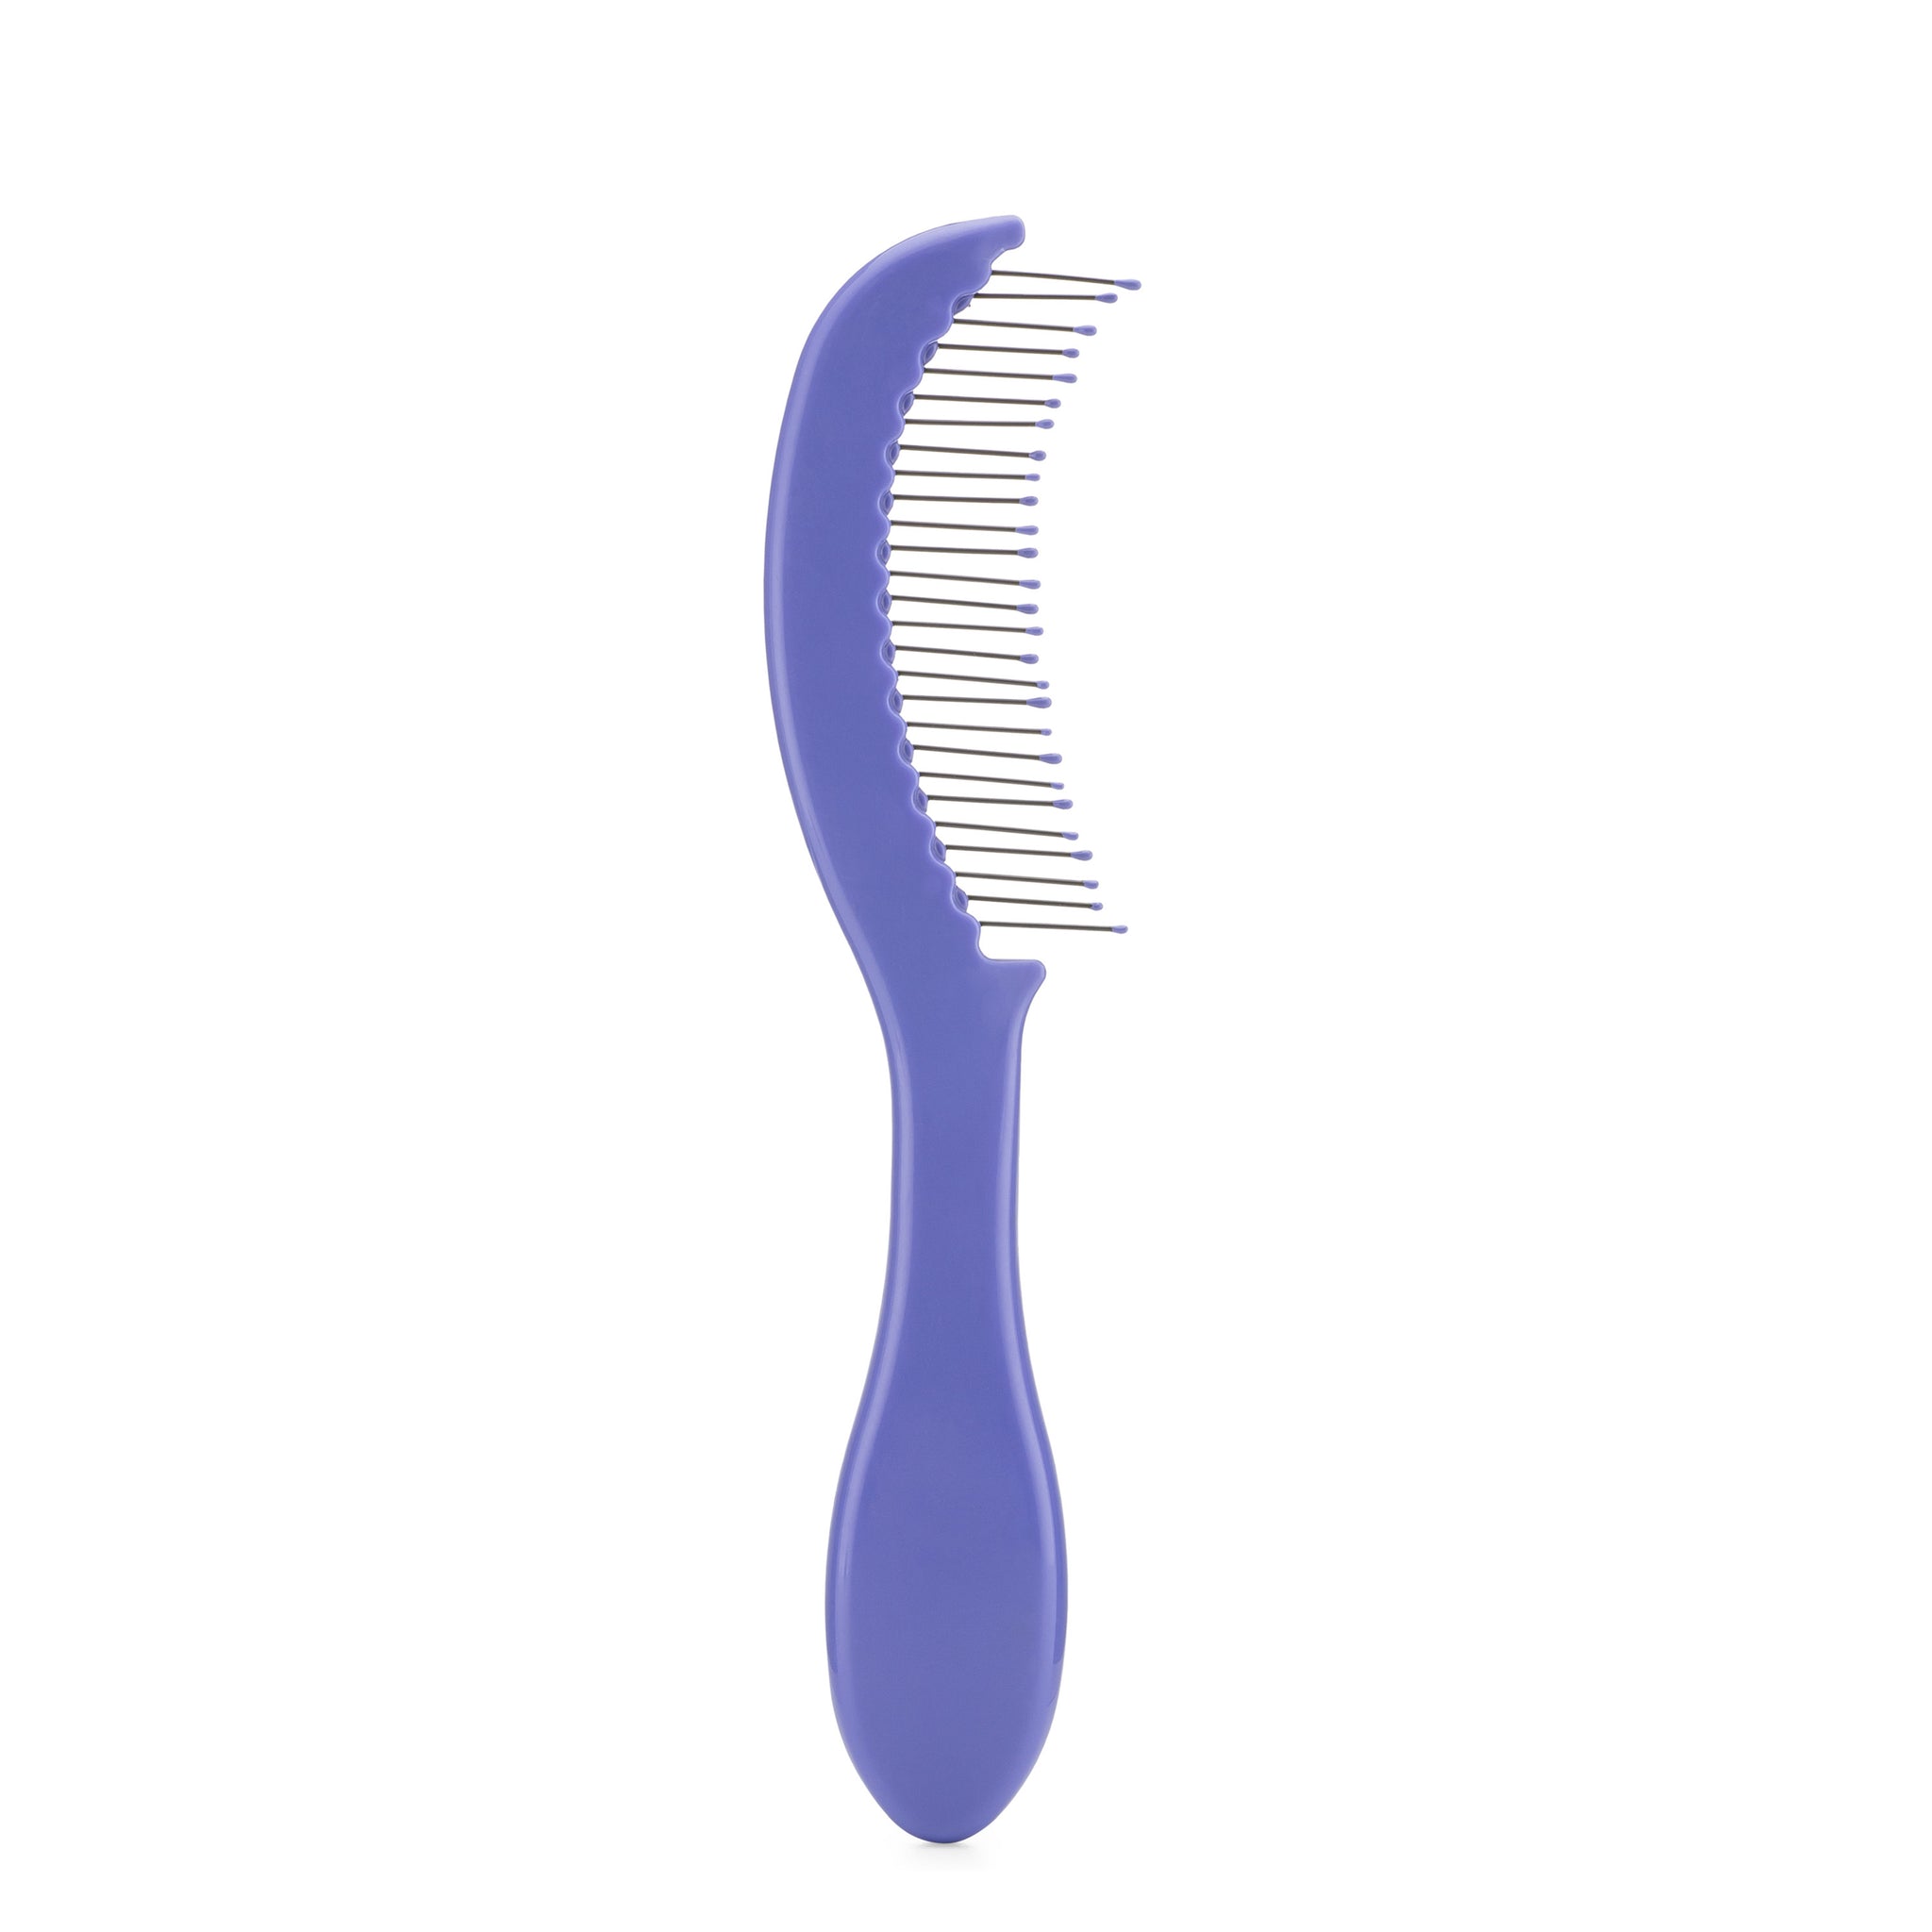 Thin Hair Detangling Comb